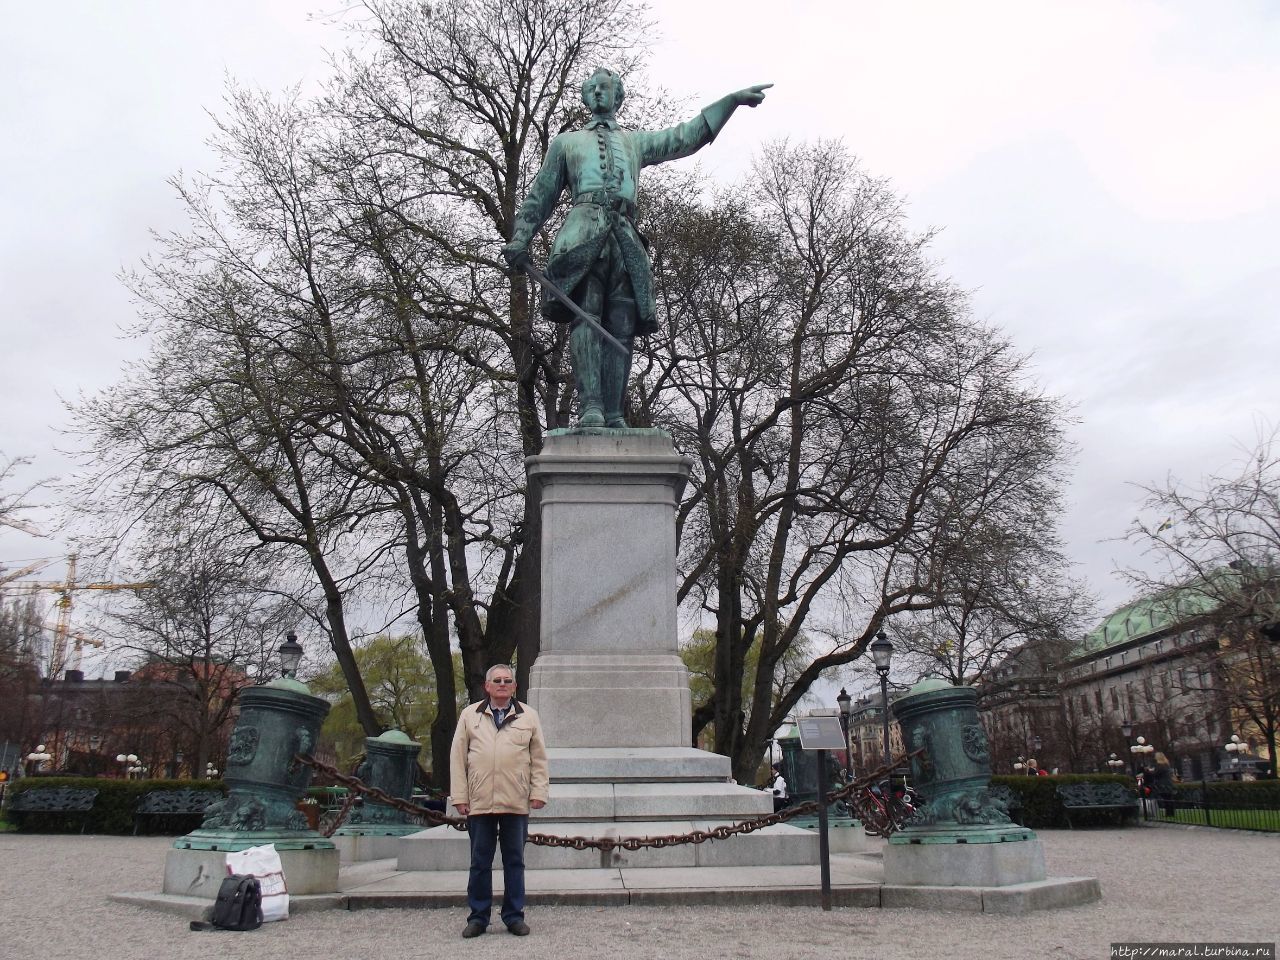 Карла XII вытянутой рукой указывает на восток — в сторону России. Стокгольм, Швеция